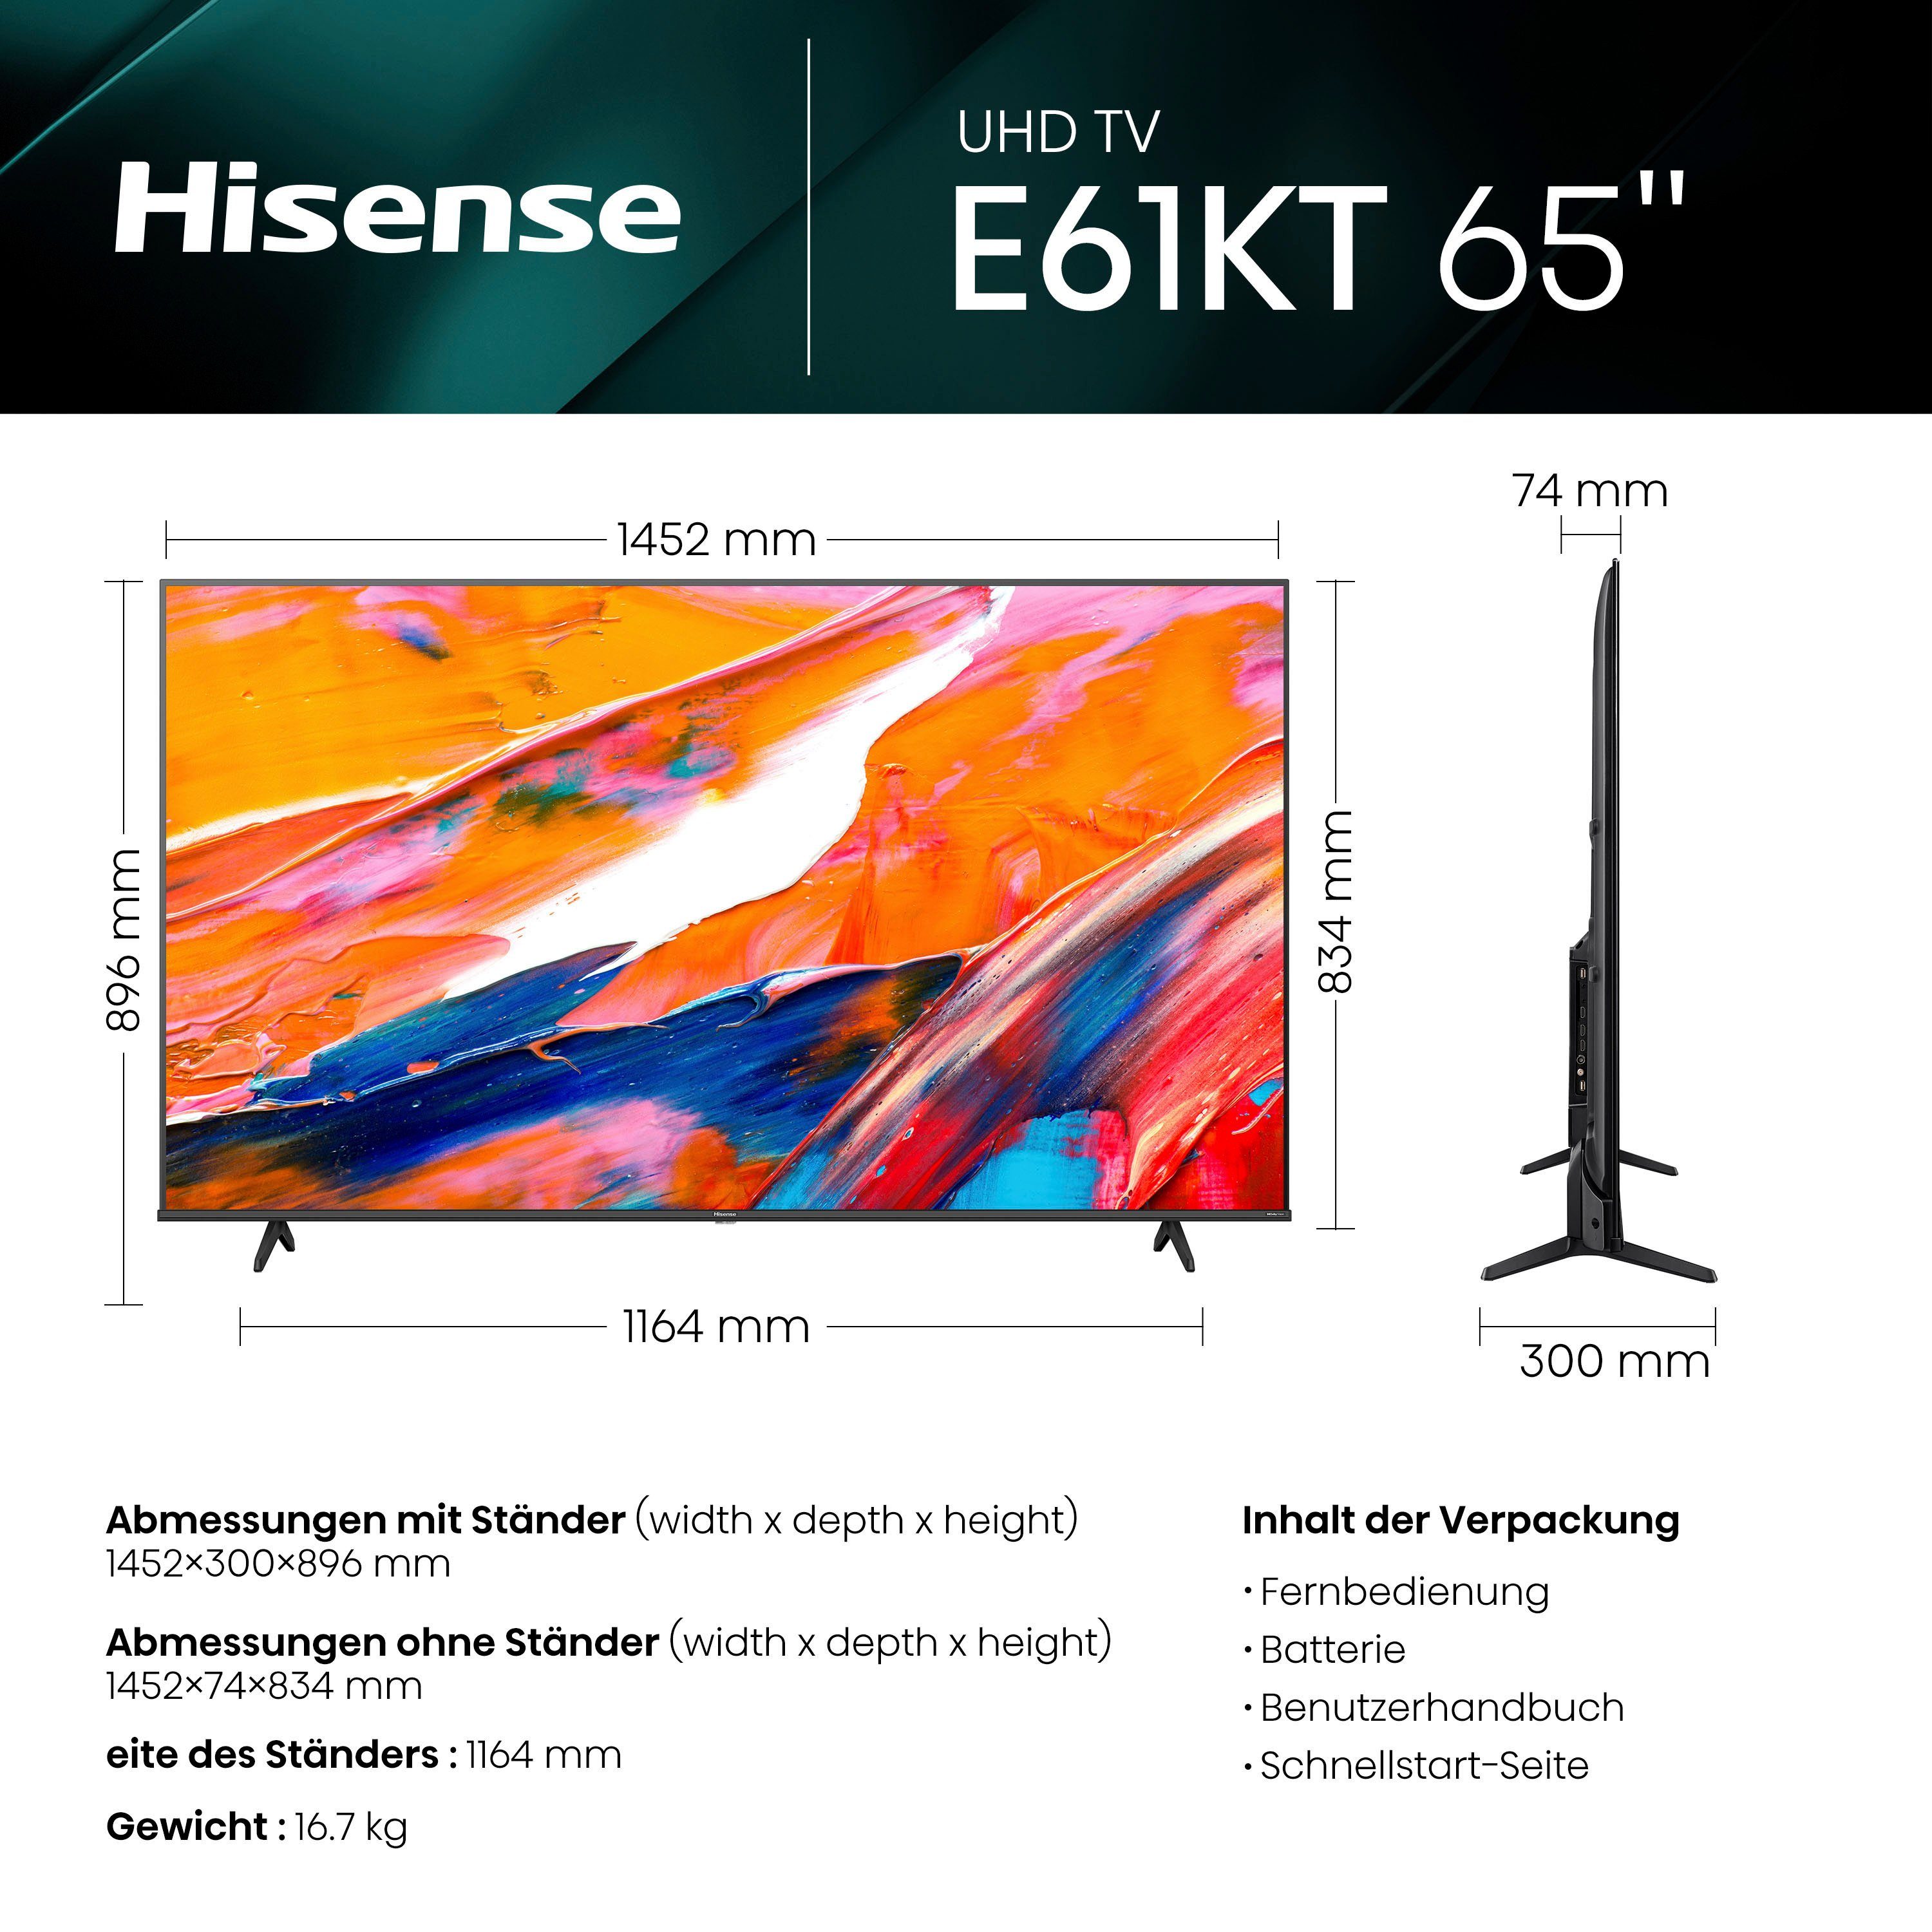 HD, Hisense DVB-C/S/S2/T/T2) Vision, Triple Tuner Ultra Smart-TV, LED-Fernseher 4K Dolby 65E61KT Zoll, cm/65 Smart-TV, (164